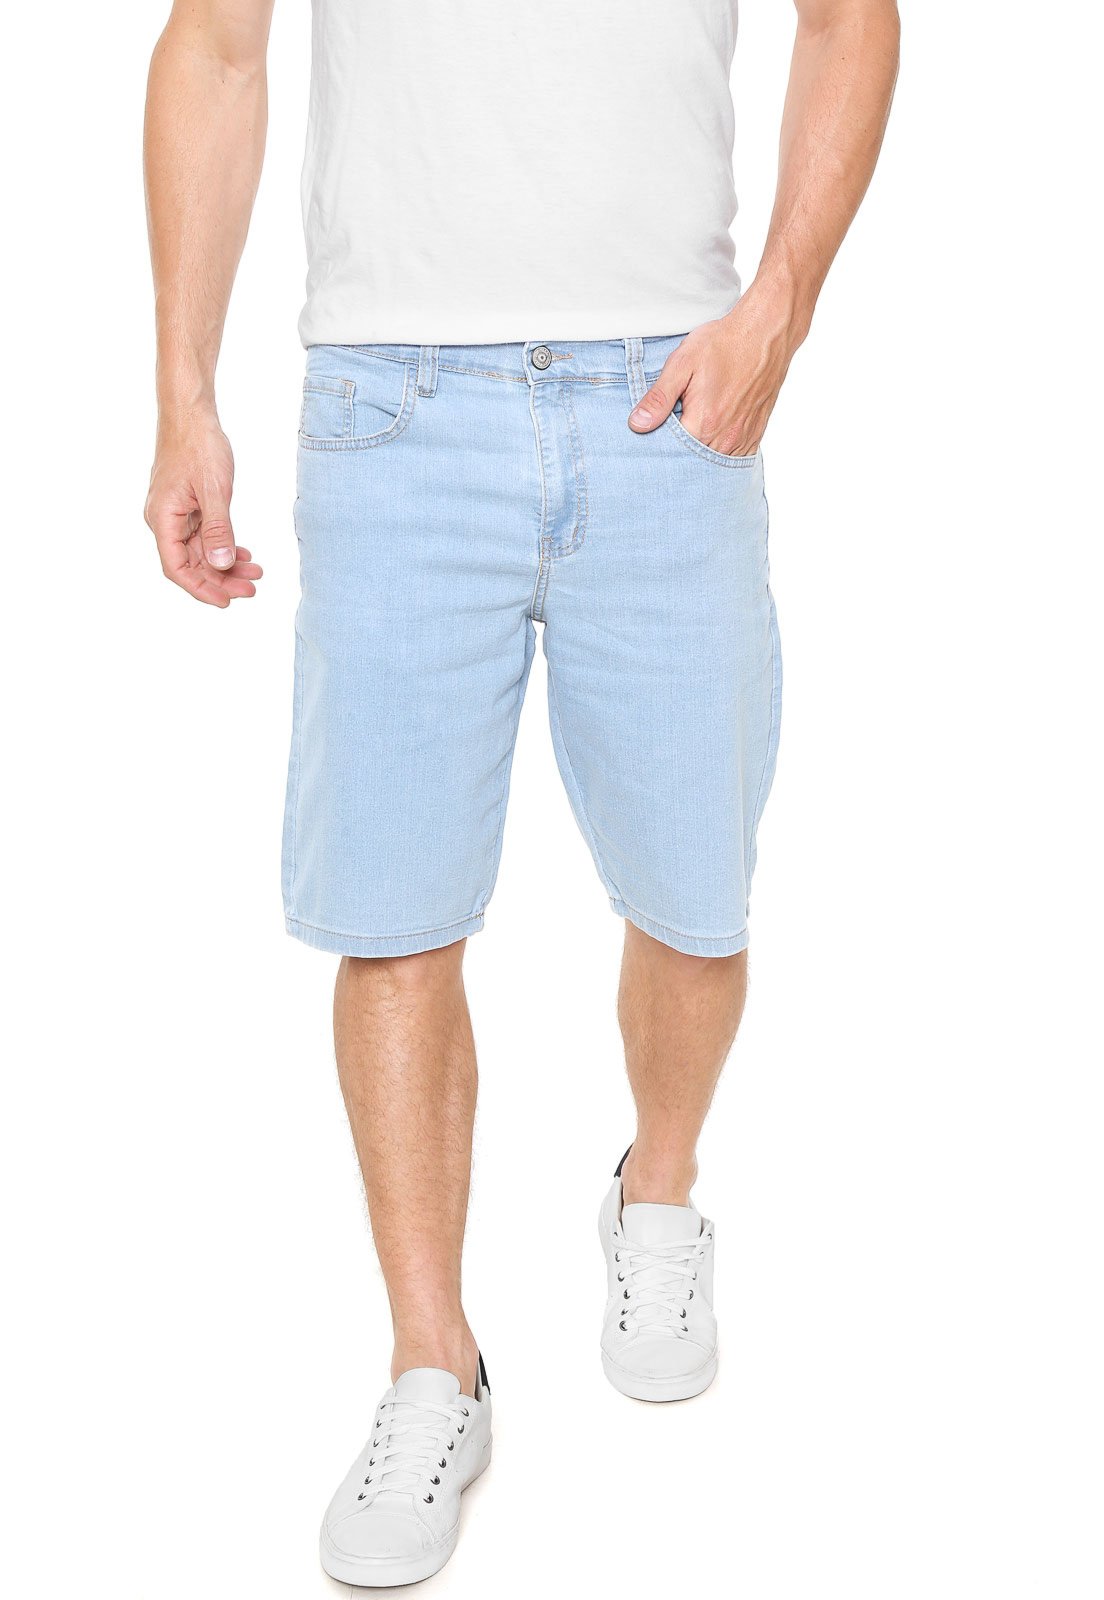 calça jeans clara masculina polo wear